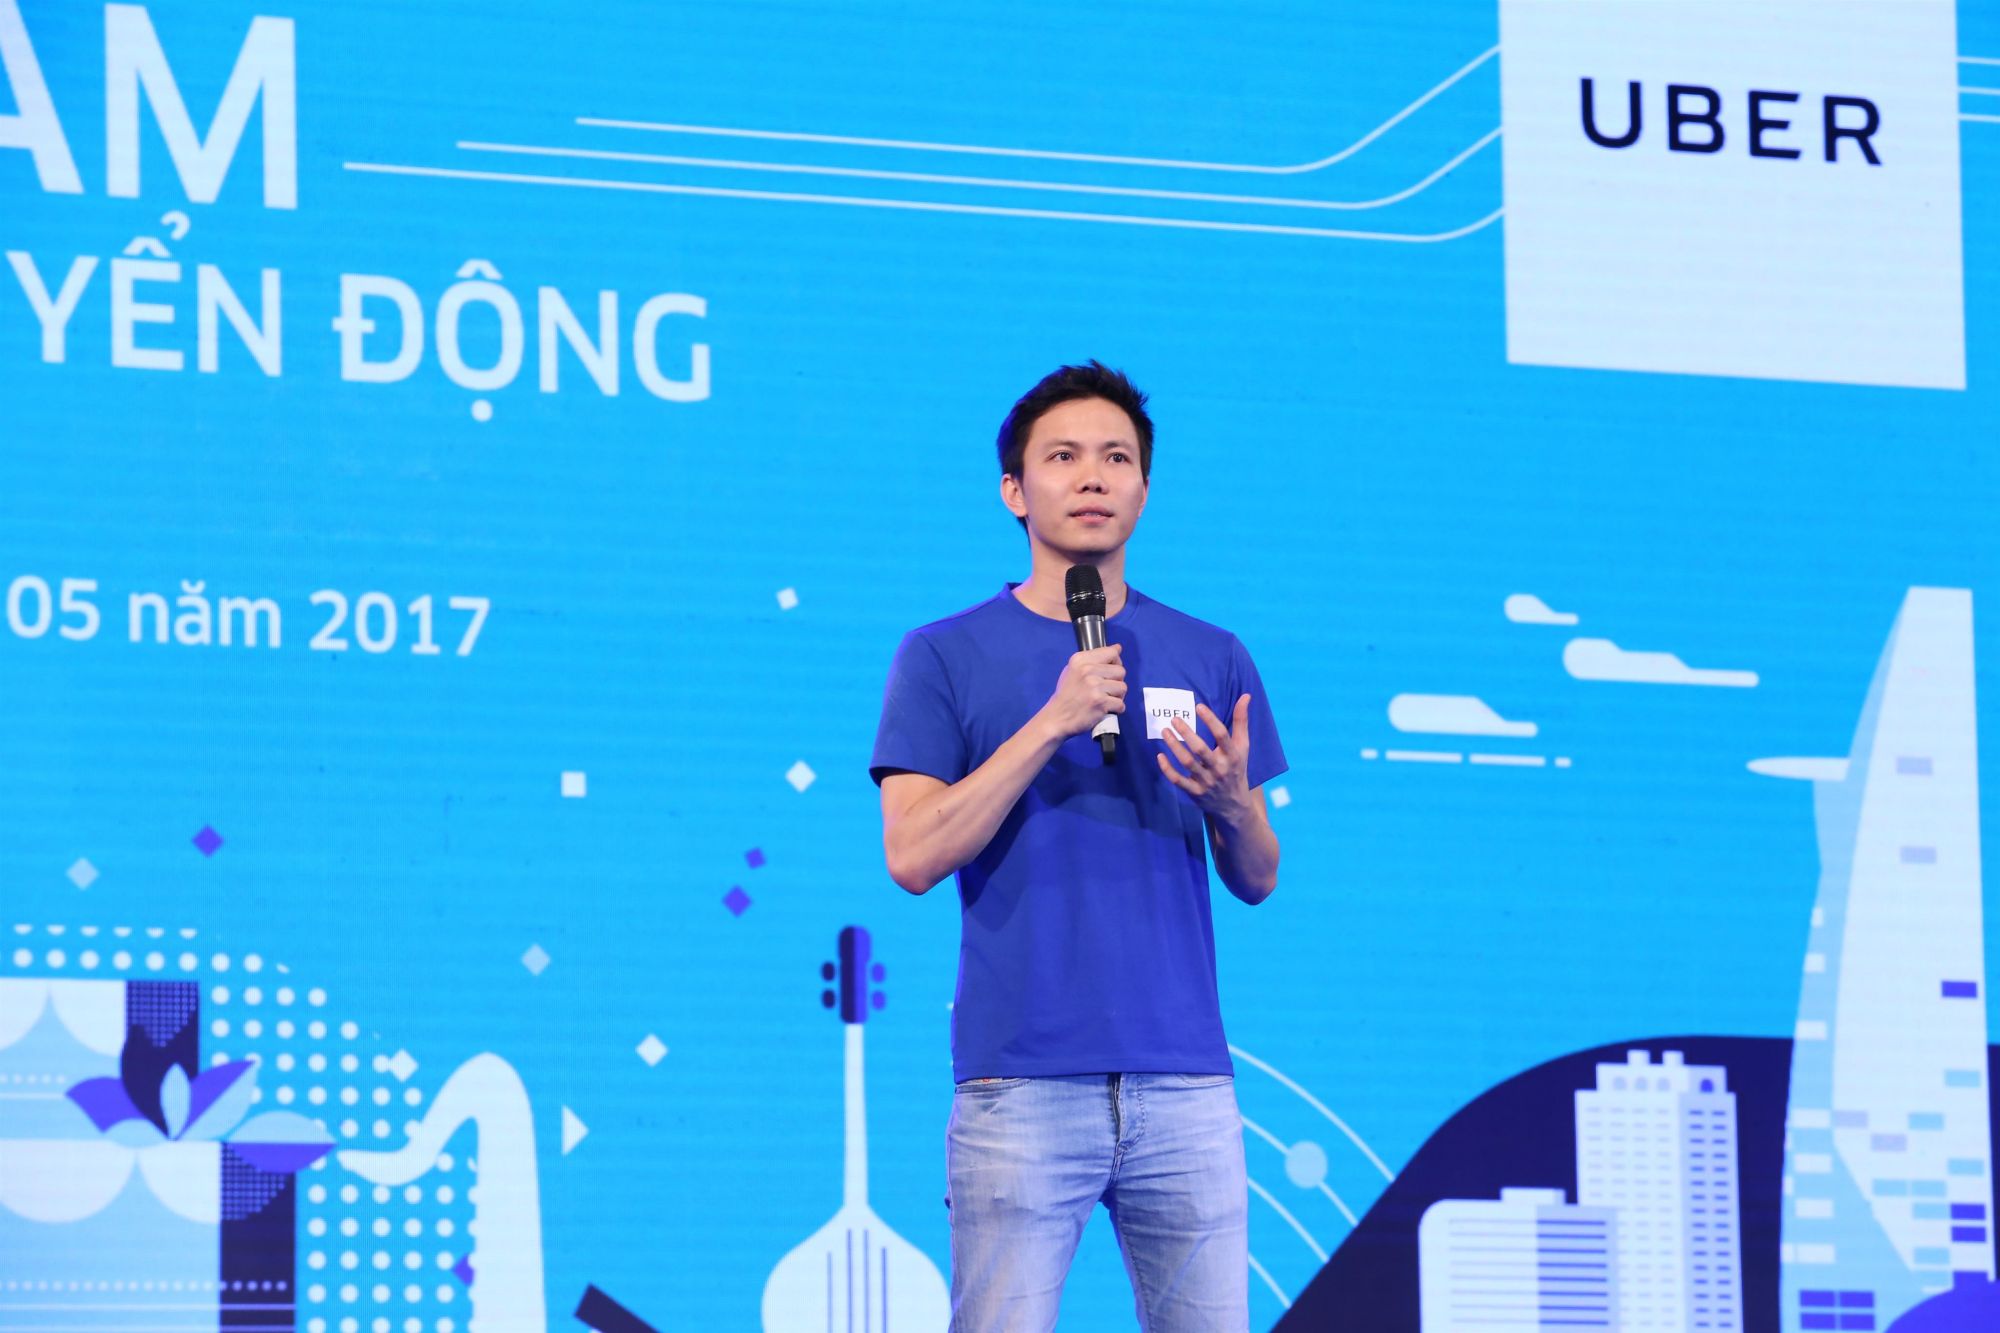 3 - uberMOTO ky niem 1 nam - Ong Dang Viet Dung CEO Uber diem lai  nhung thanh tuu Uber da dat duoc